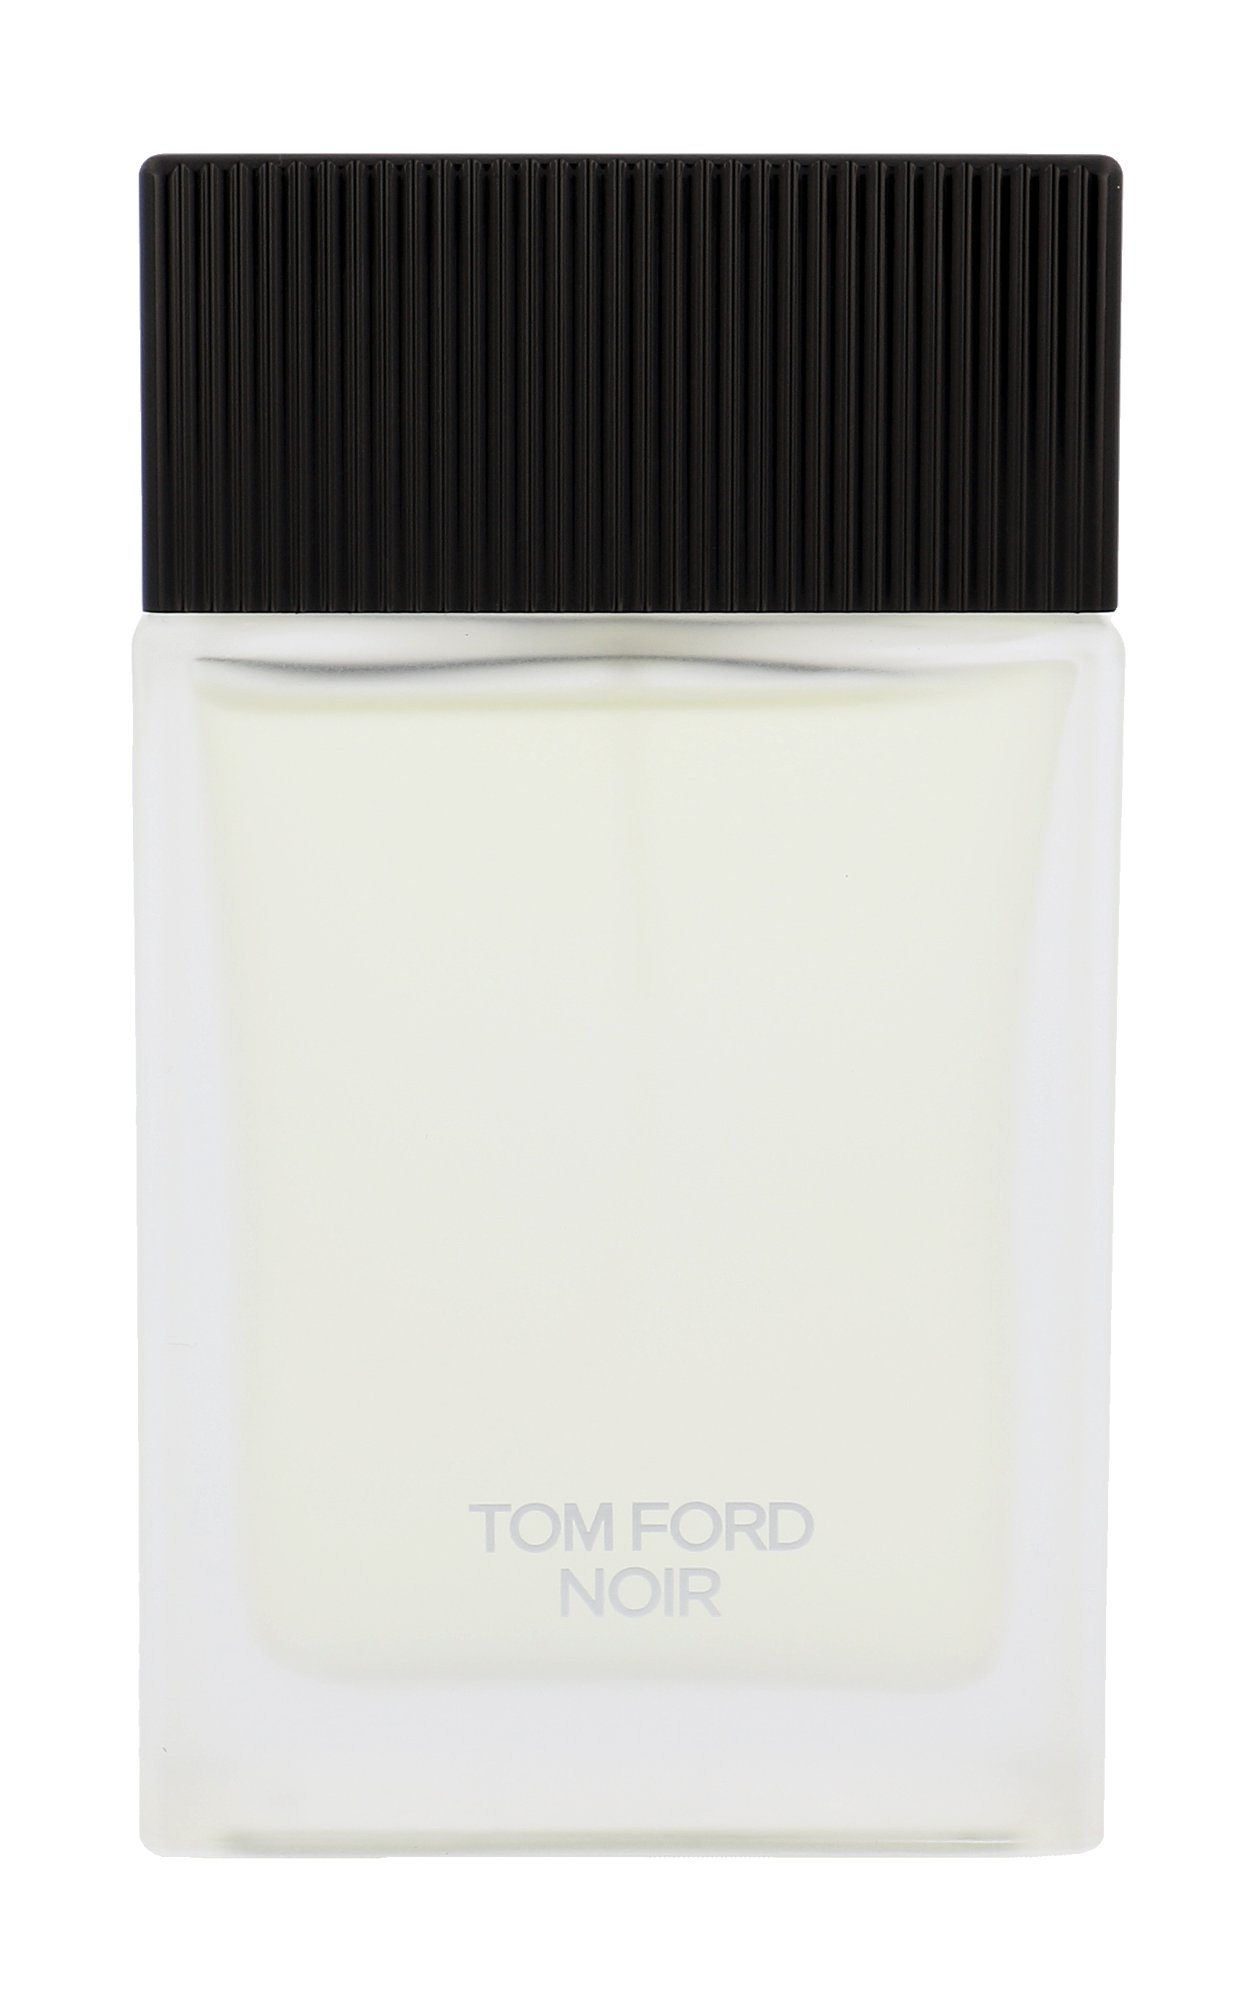 TOM FORD Noir, Toaletná voda 100ml